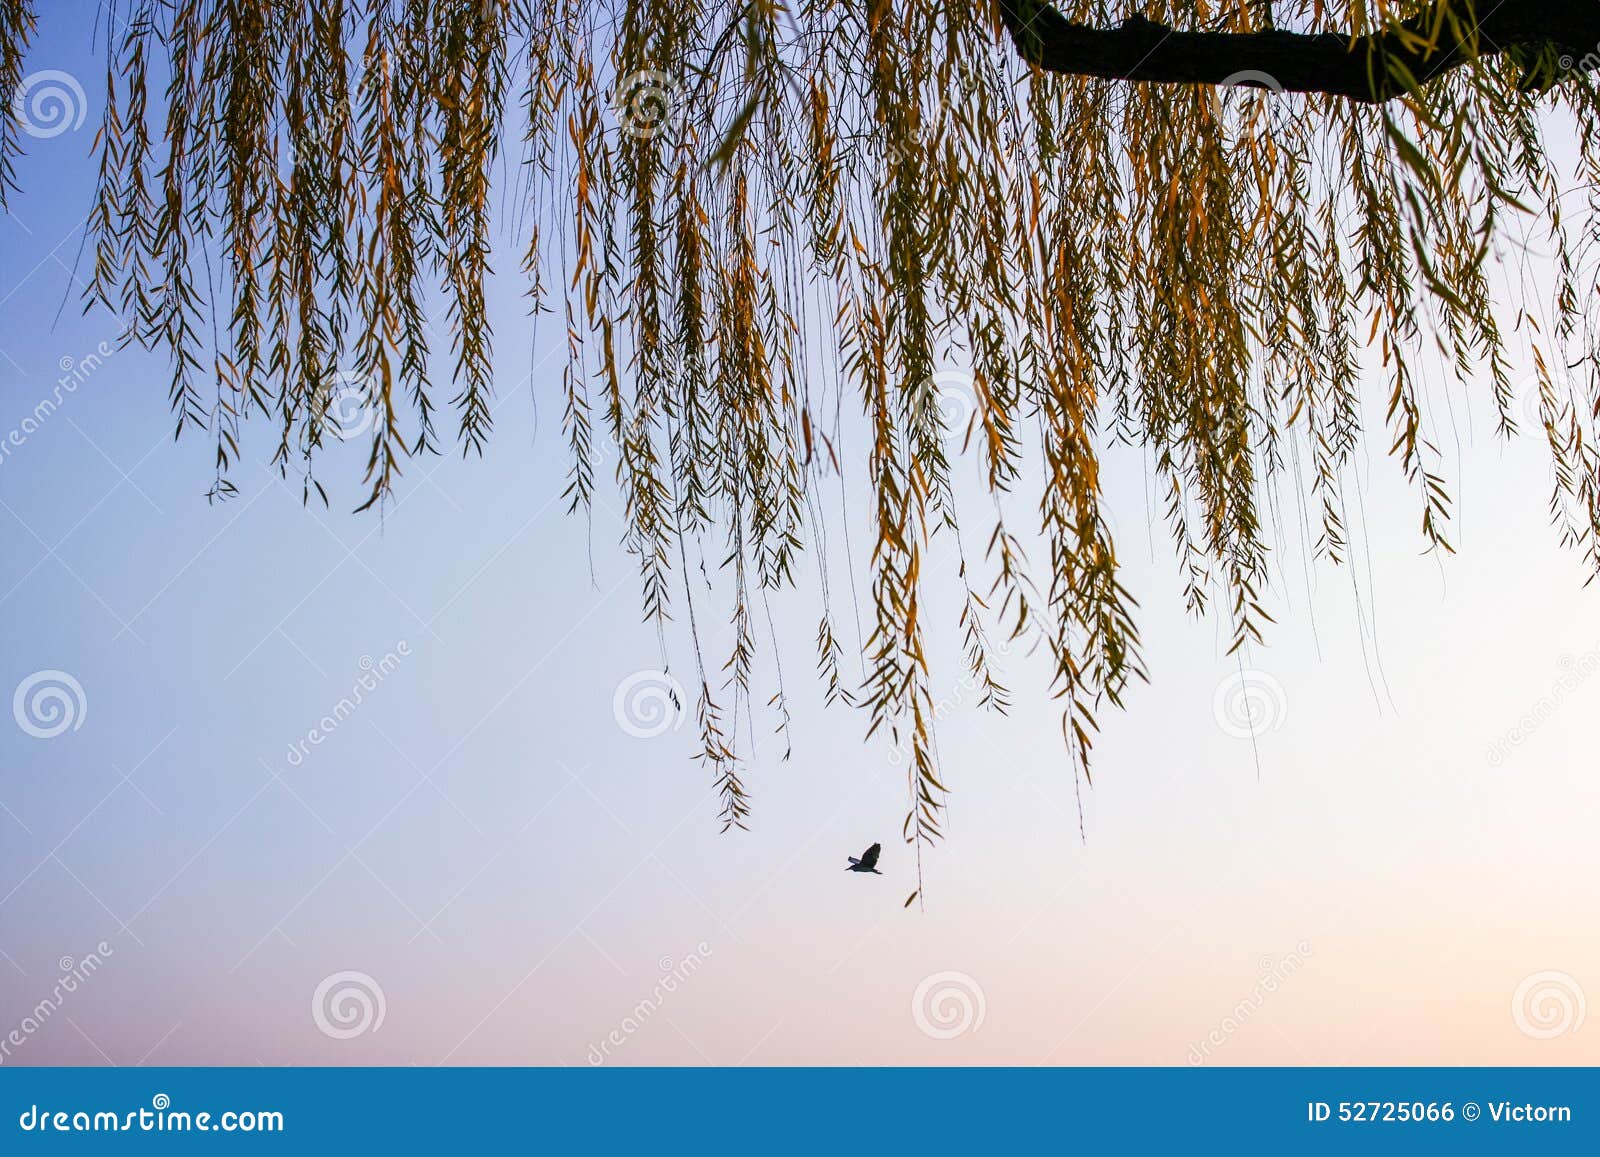 Willow and bird stock photo. Image of orange, plant, tree - 52725066